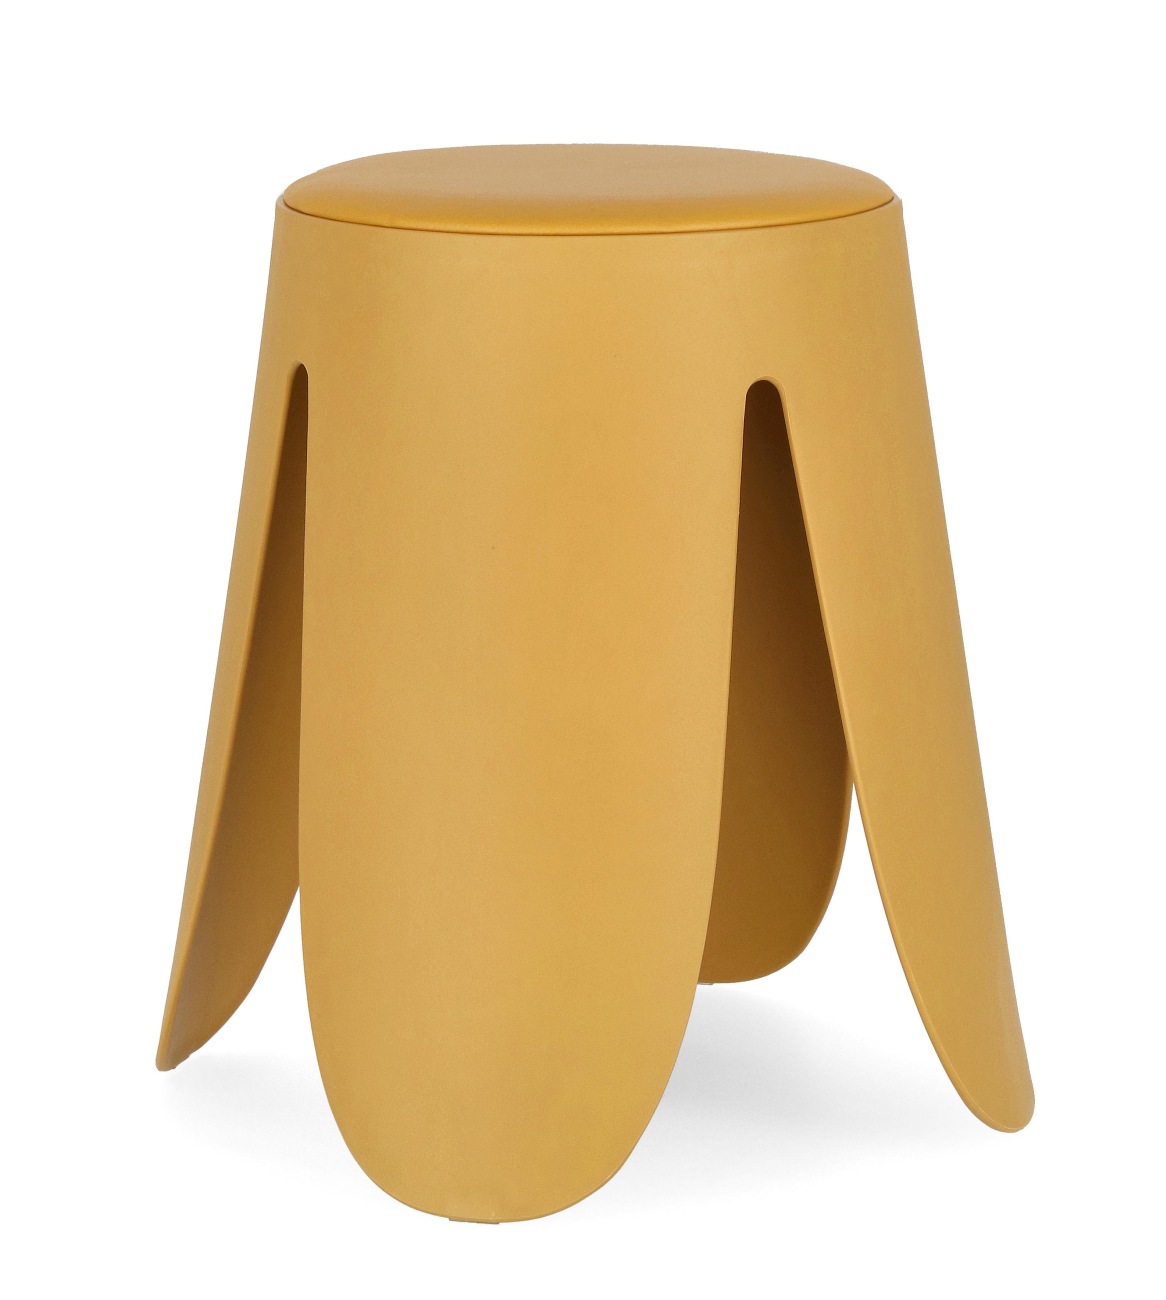 Der Hocker Imogen überzeugt mit seinem modernen Stil. Gefertigt wurde er aus Kunststoff, welcher einen gelben Farbton besitzt. Die Sitzfläche ist aus Kunstleder und hat eine gelbe Farbe. Der Hocker besitzt einen Durchmesser von 37 cm.